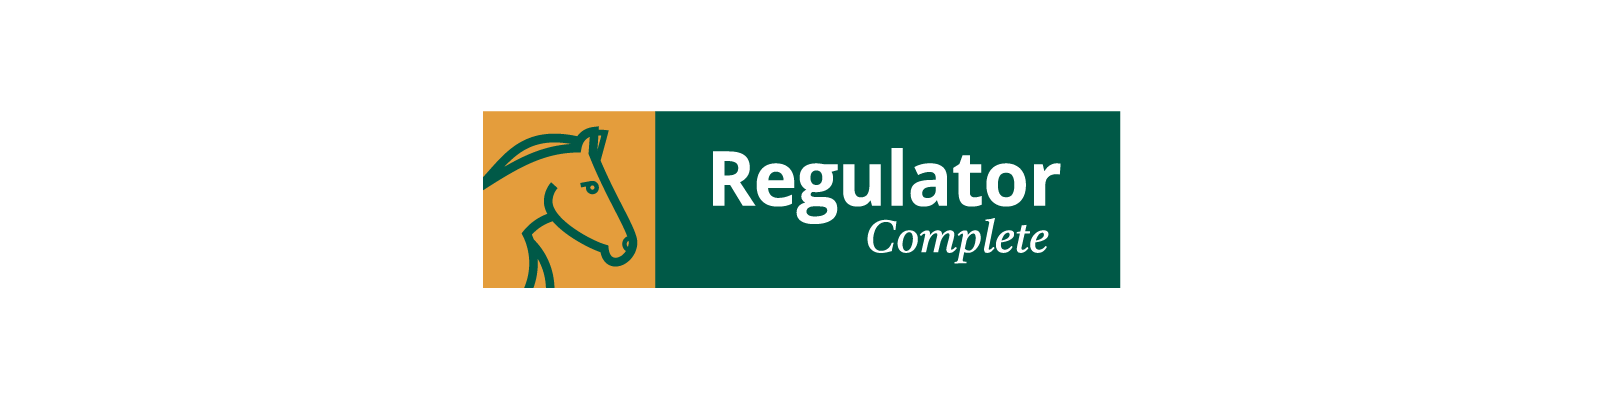 Regulator Complete ApS